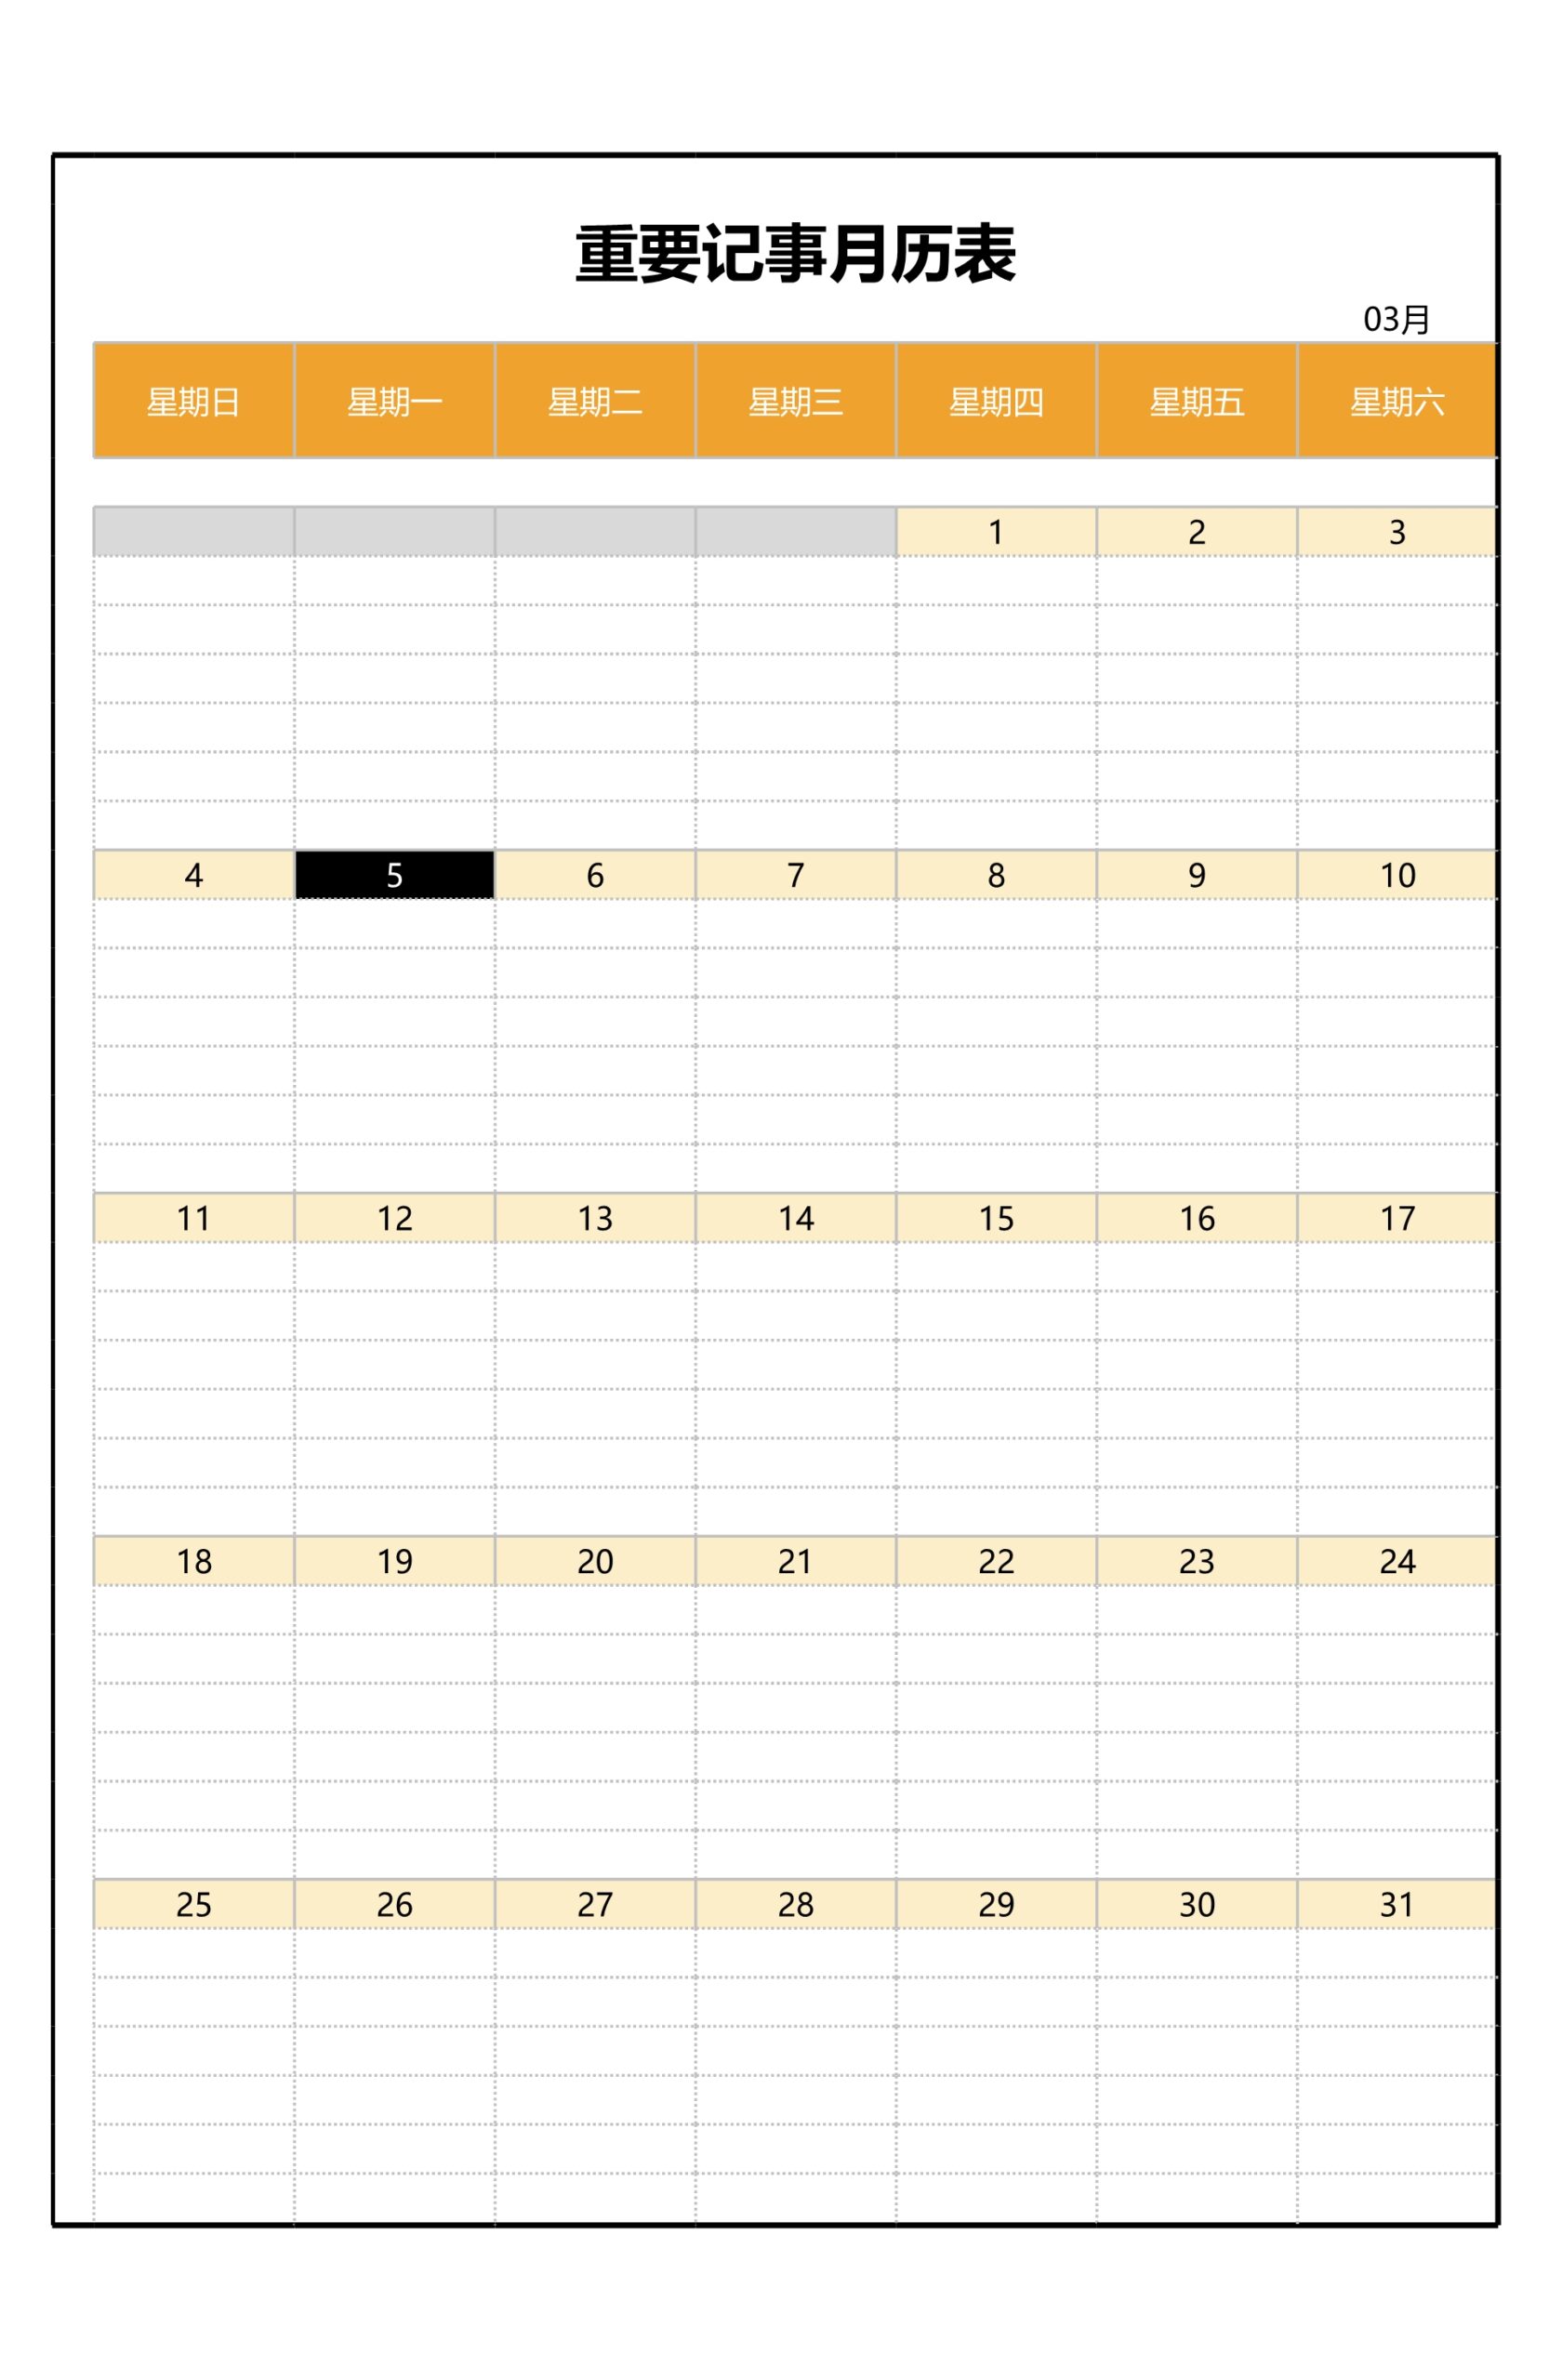 重要记事月历表Excle表格样本模板免费下载